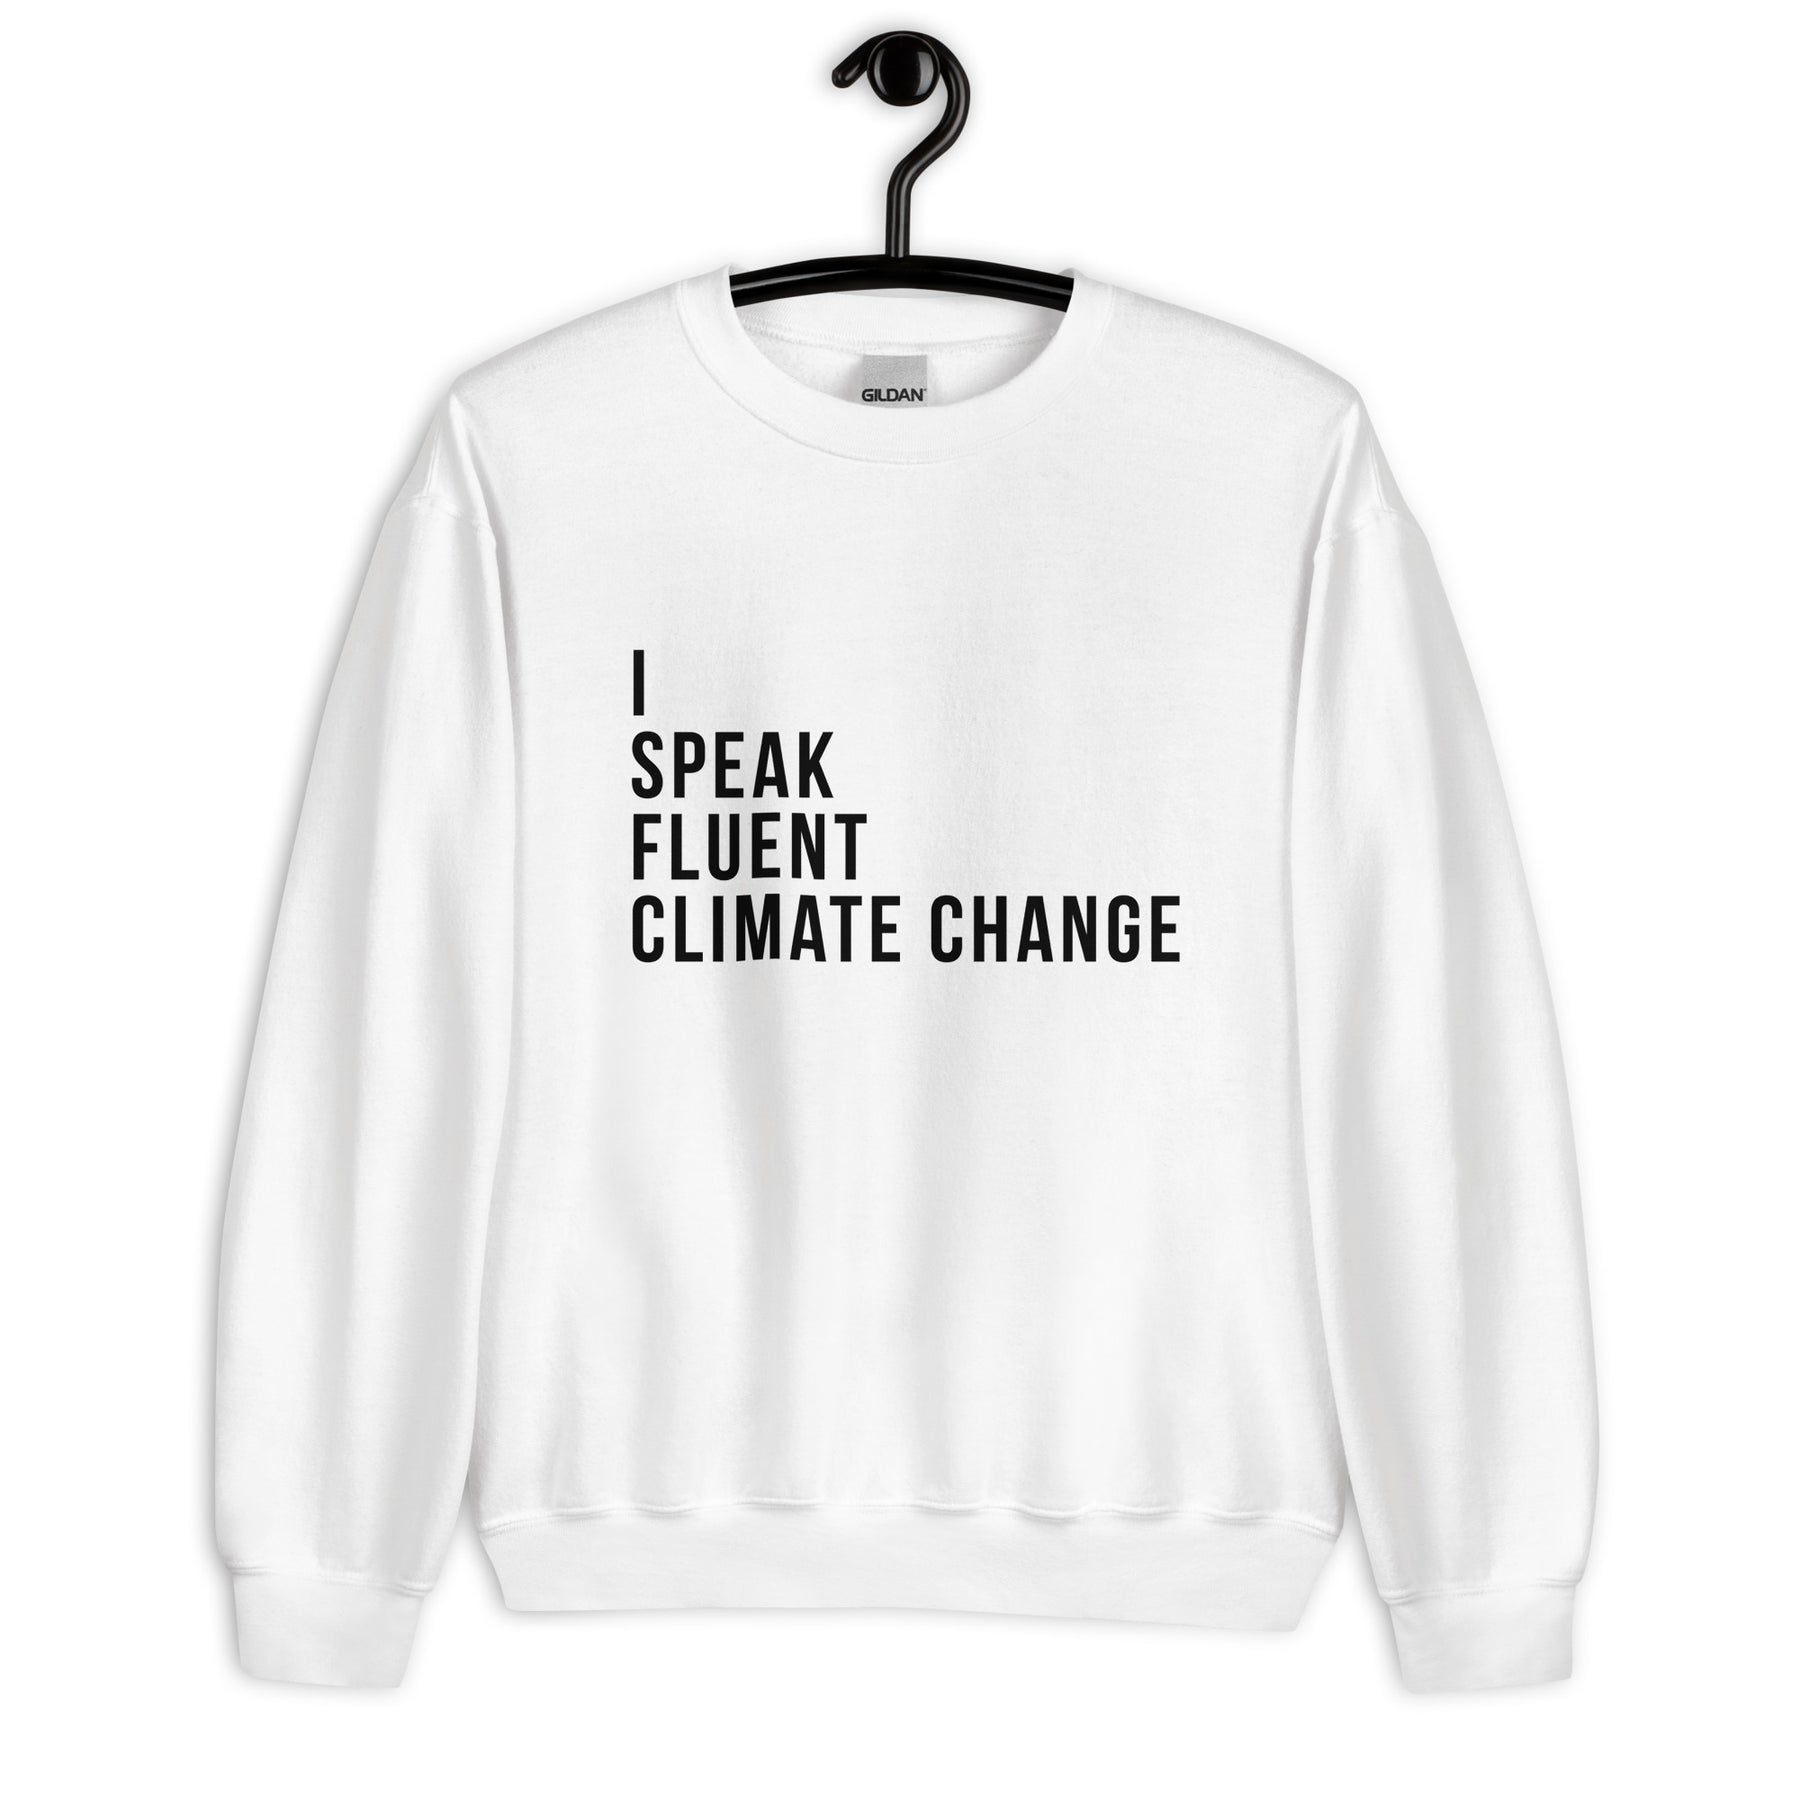 I SPEAK FLUENT CLIMATE CHANGE Sweatshirt